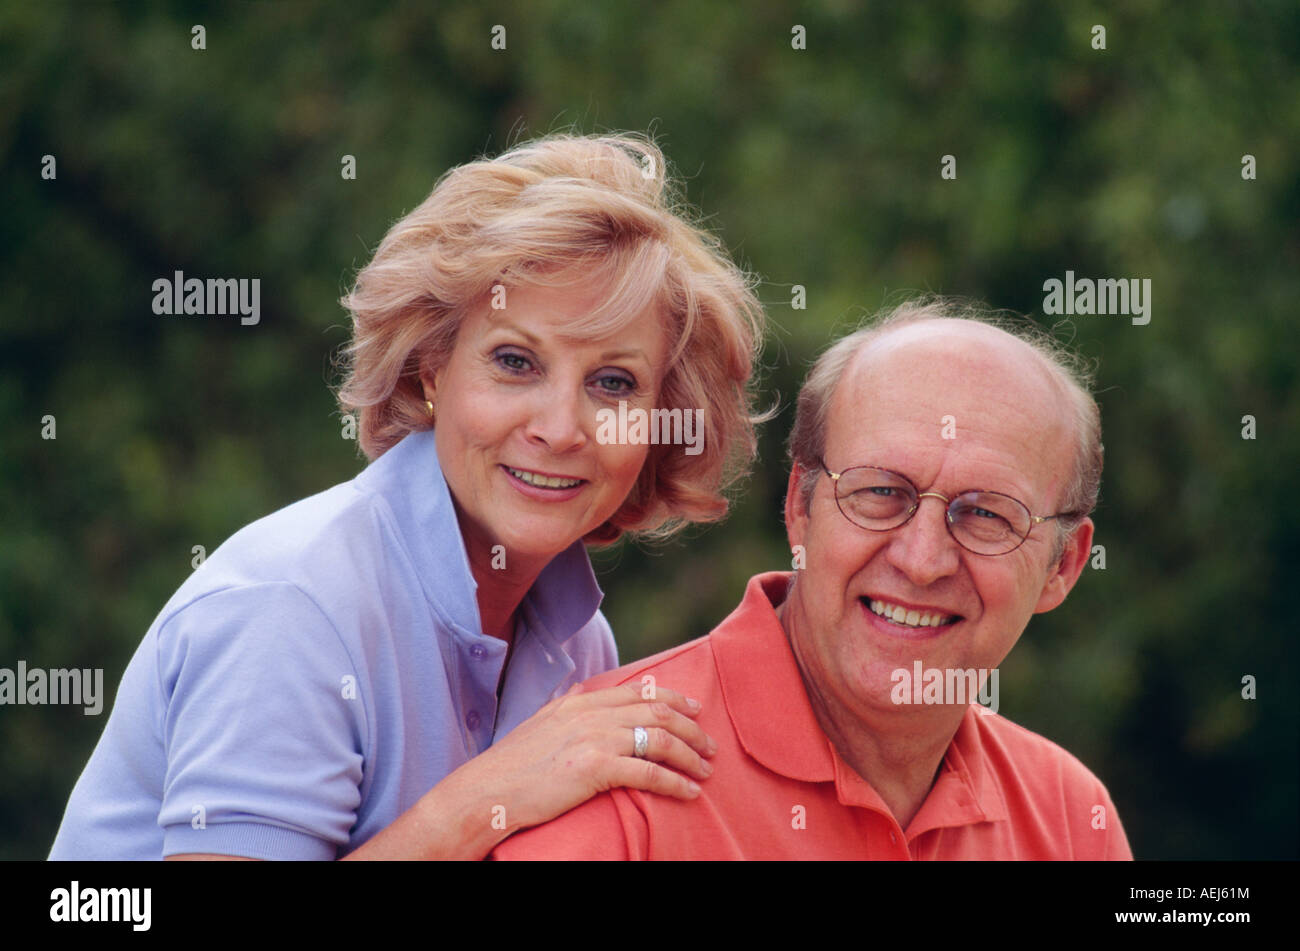 Atractivo ciudadano ciudadanos senior feliz pareja retrato sonriente Foto de stock